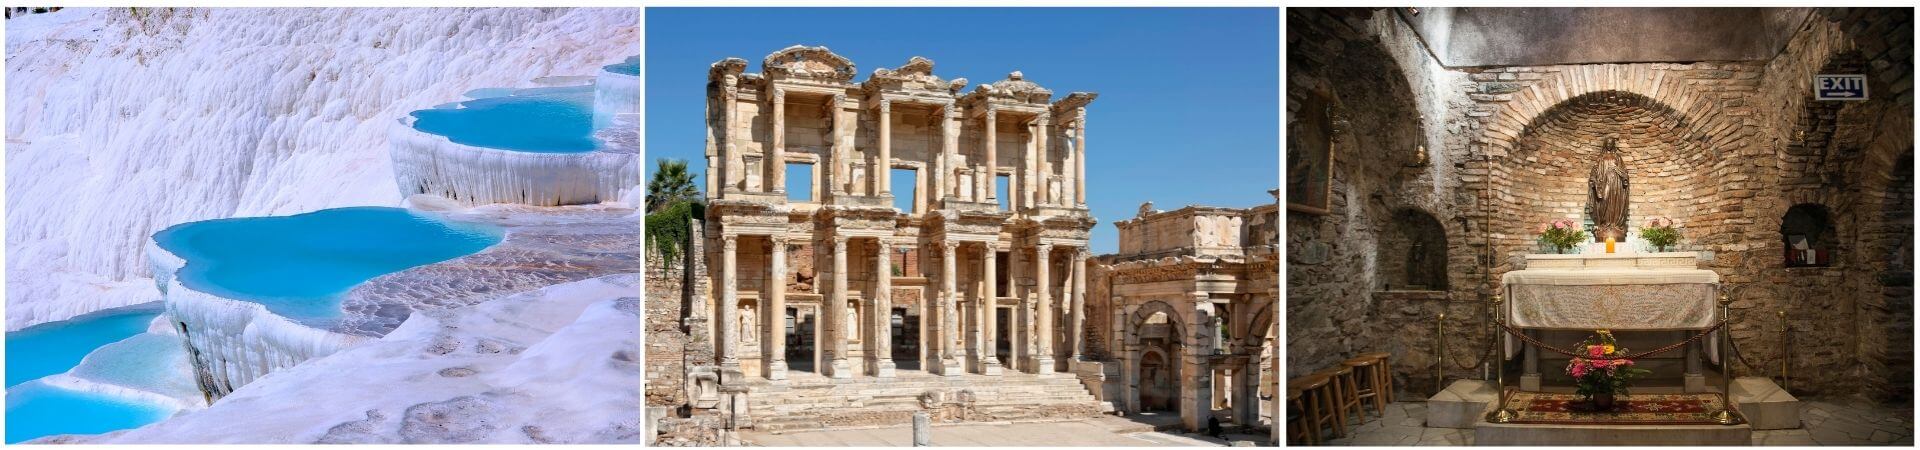 Ephesus & Pamukkale Tour 2 Tage 1 Nacht (Rabatt)